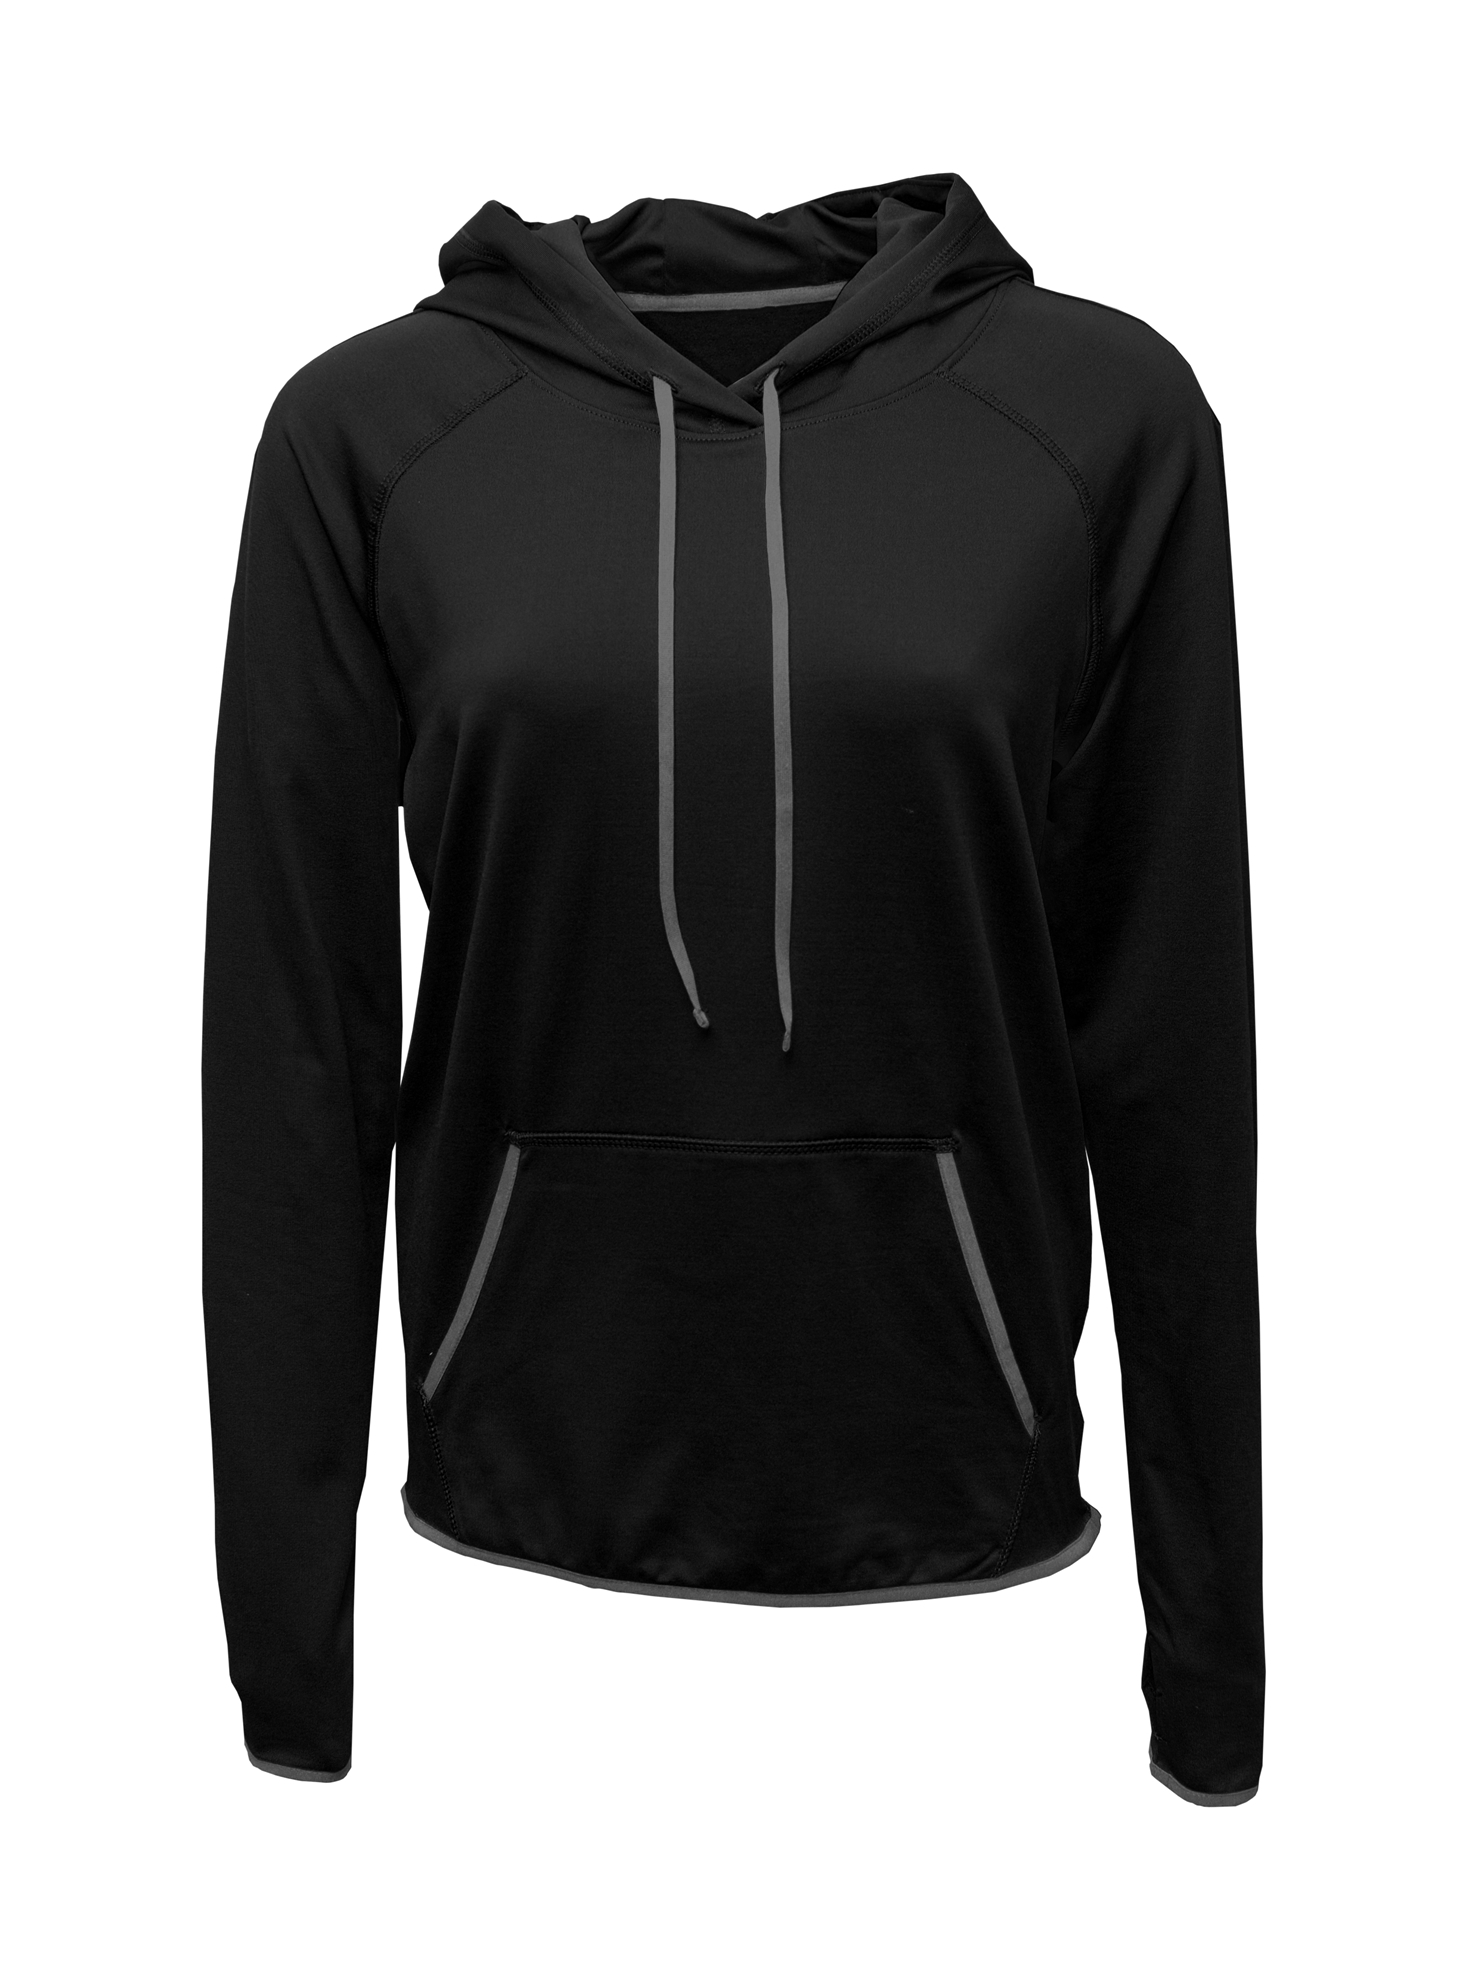 BAW Athletic Wear F537 - Ladies Comfort Hooded Sweatshirt